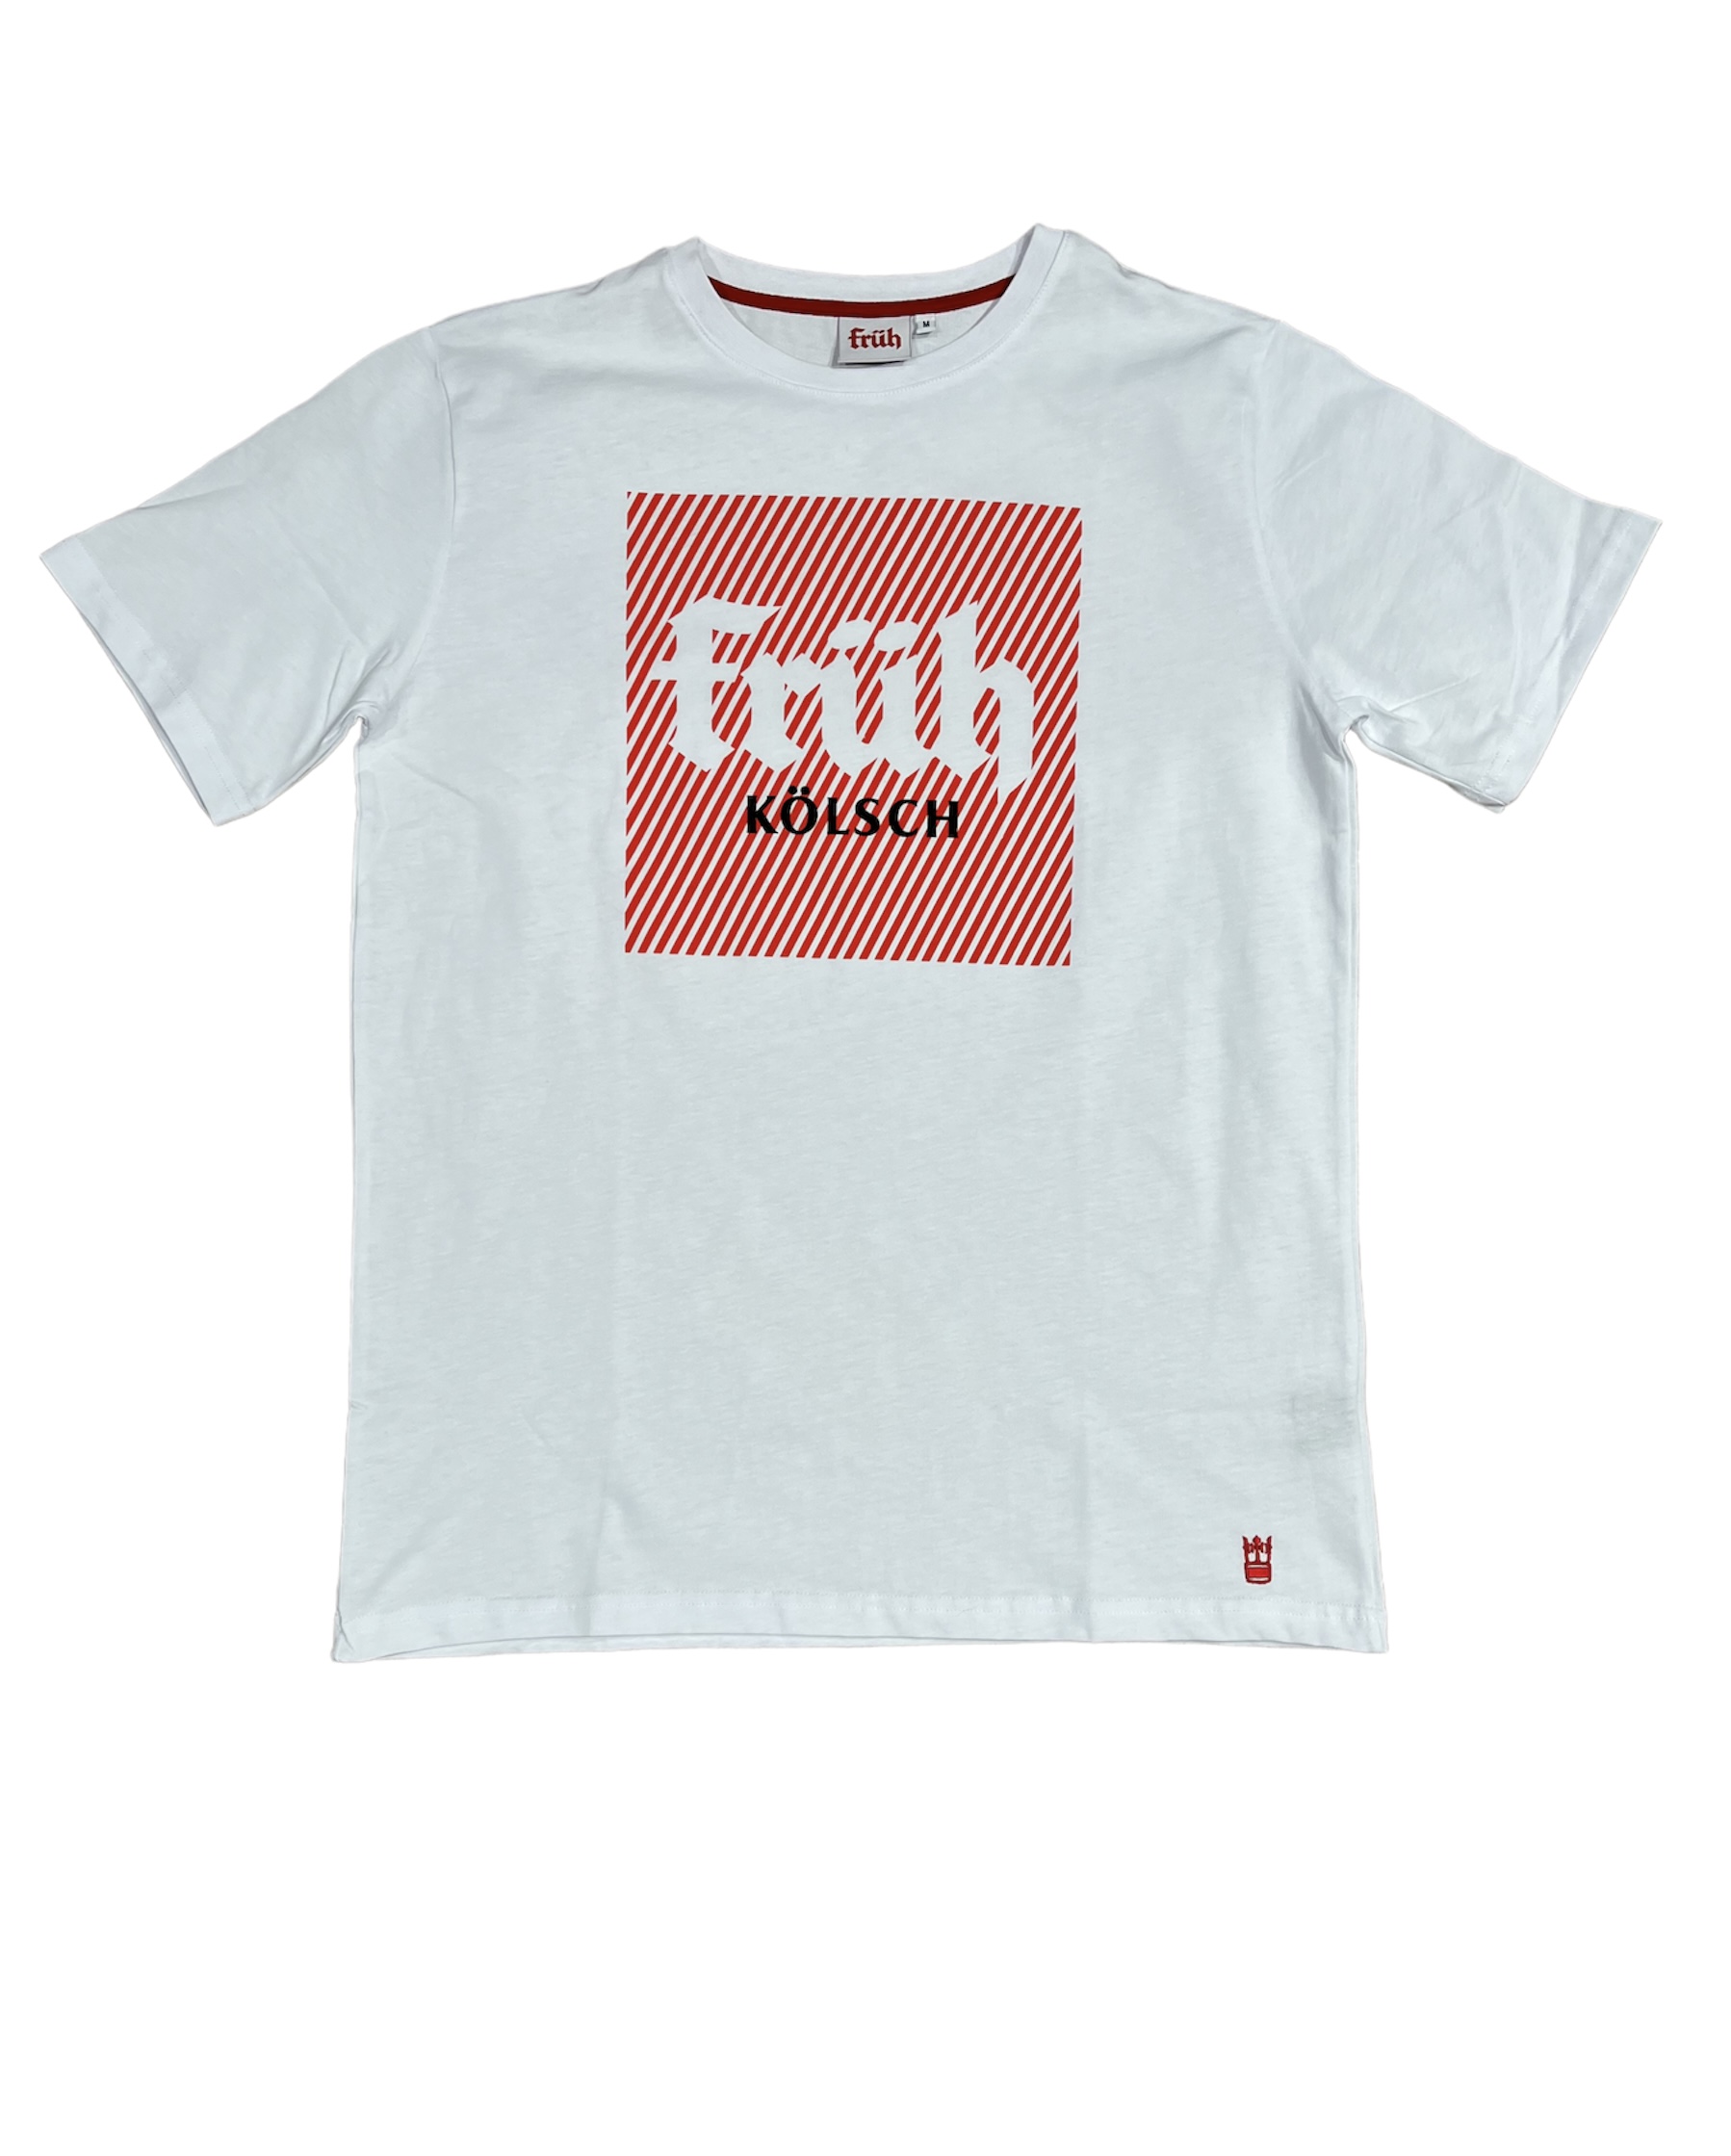 Früh Shirt weiss mit Früh Quadrat Logo XXL